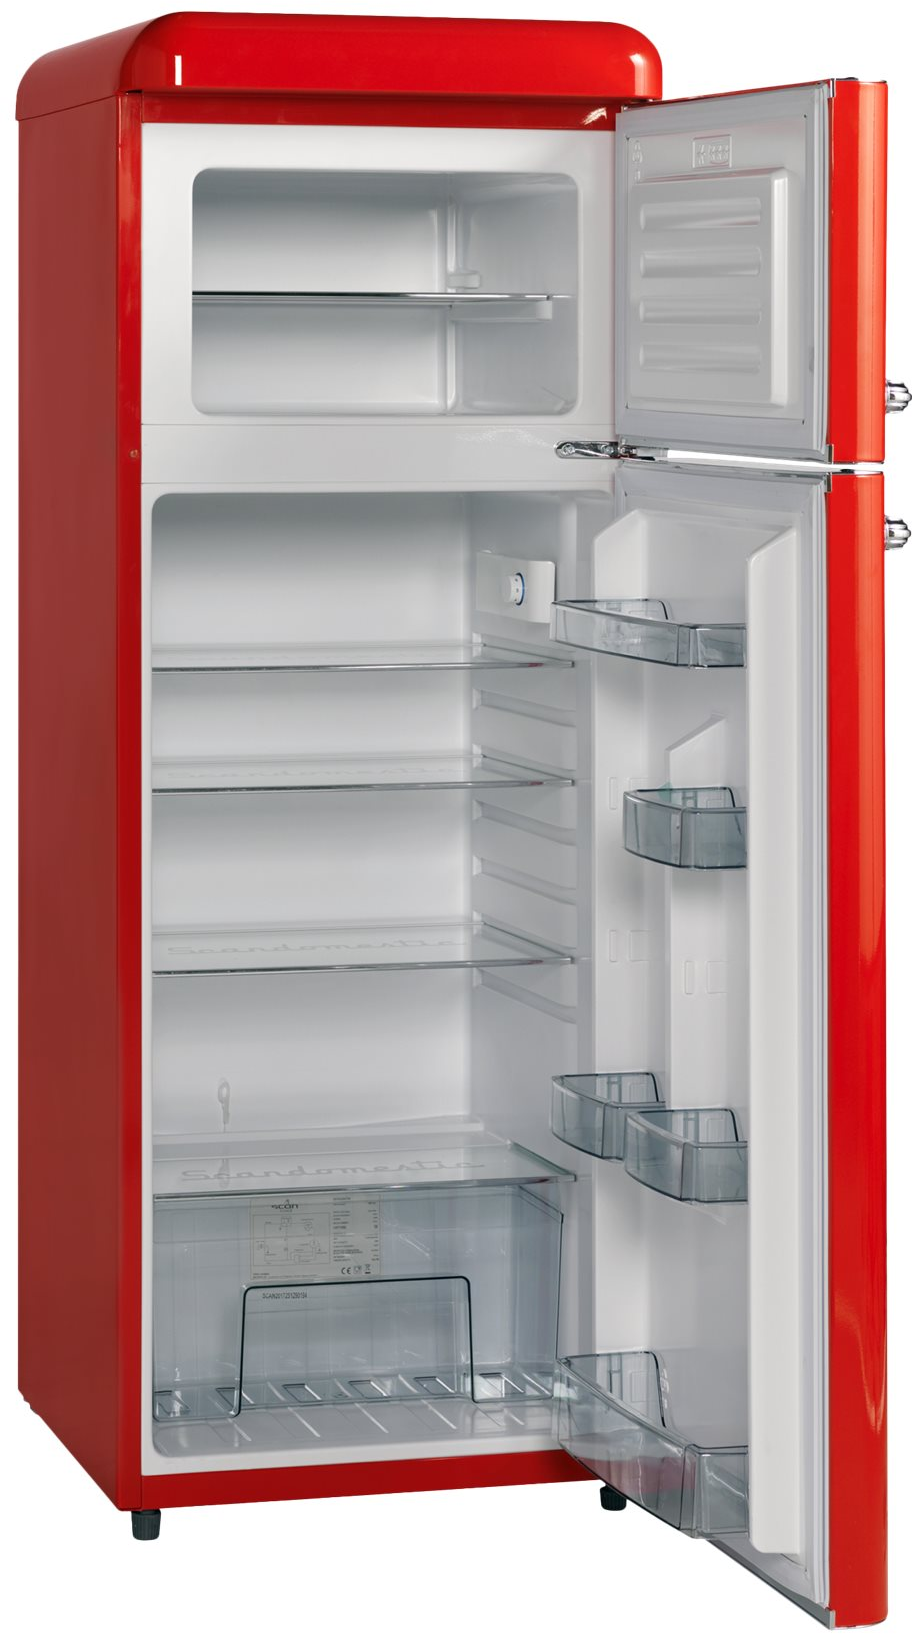 5704704013995 Scandomestic RKF 203 R - Fritstående køleskab med fryseboks Hvidevarer,Kølefryseskabe,Fritstående køleskabe med fryseboks 8300002470 RKF 203 R